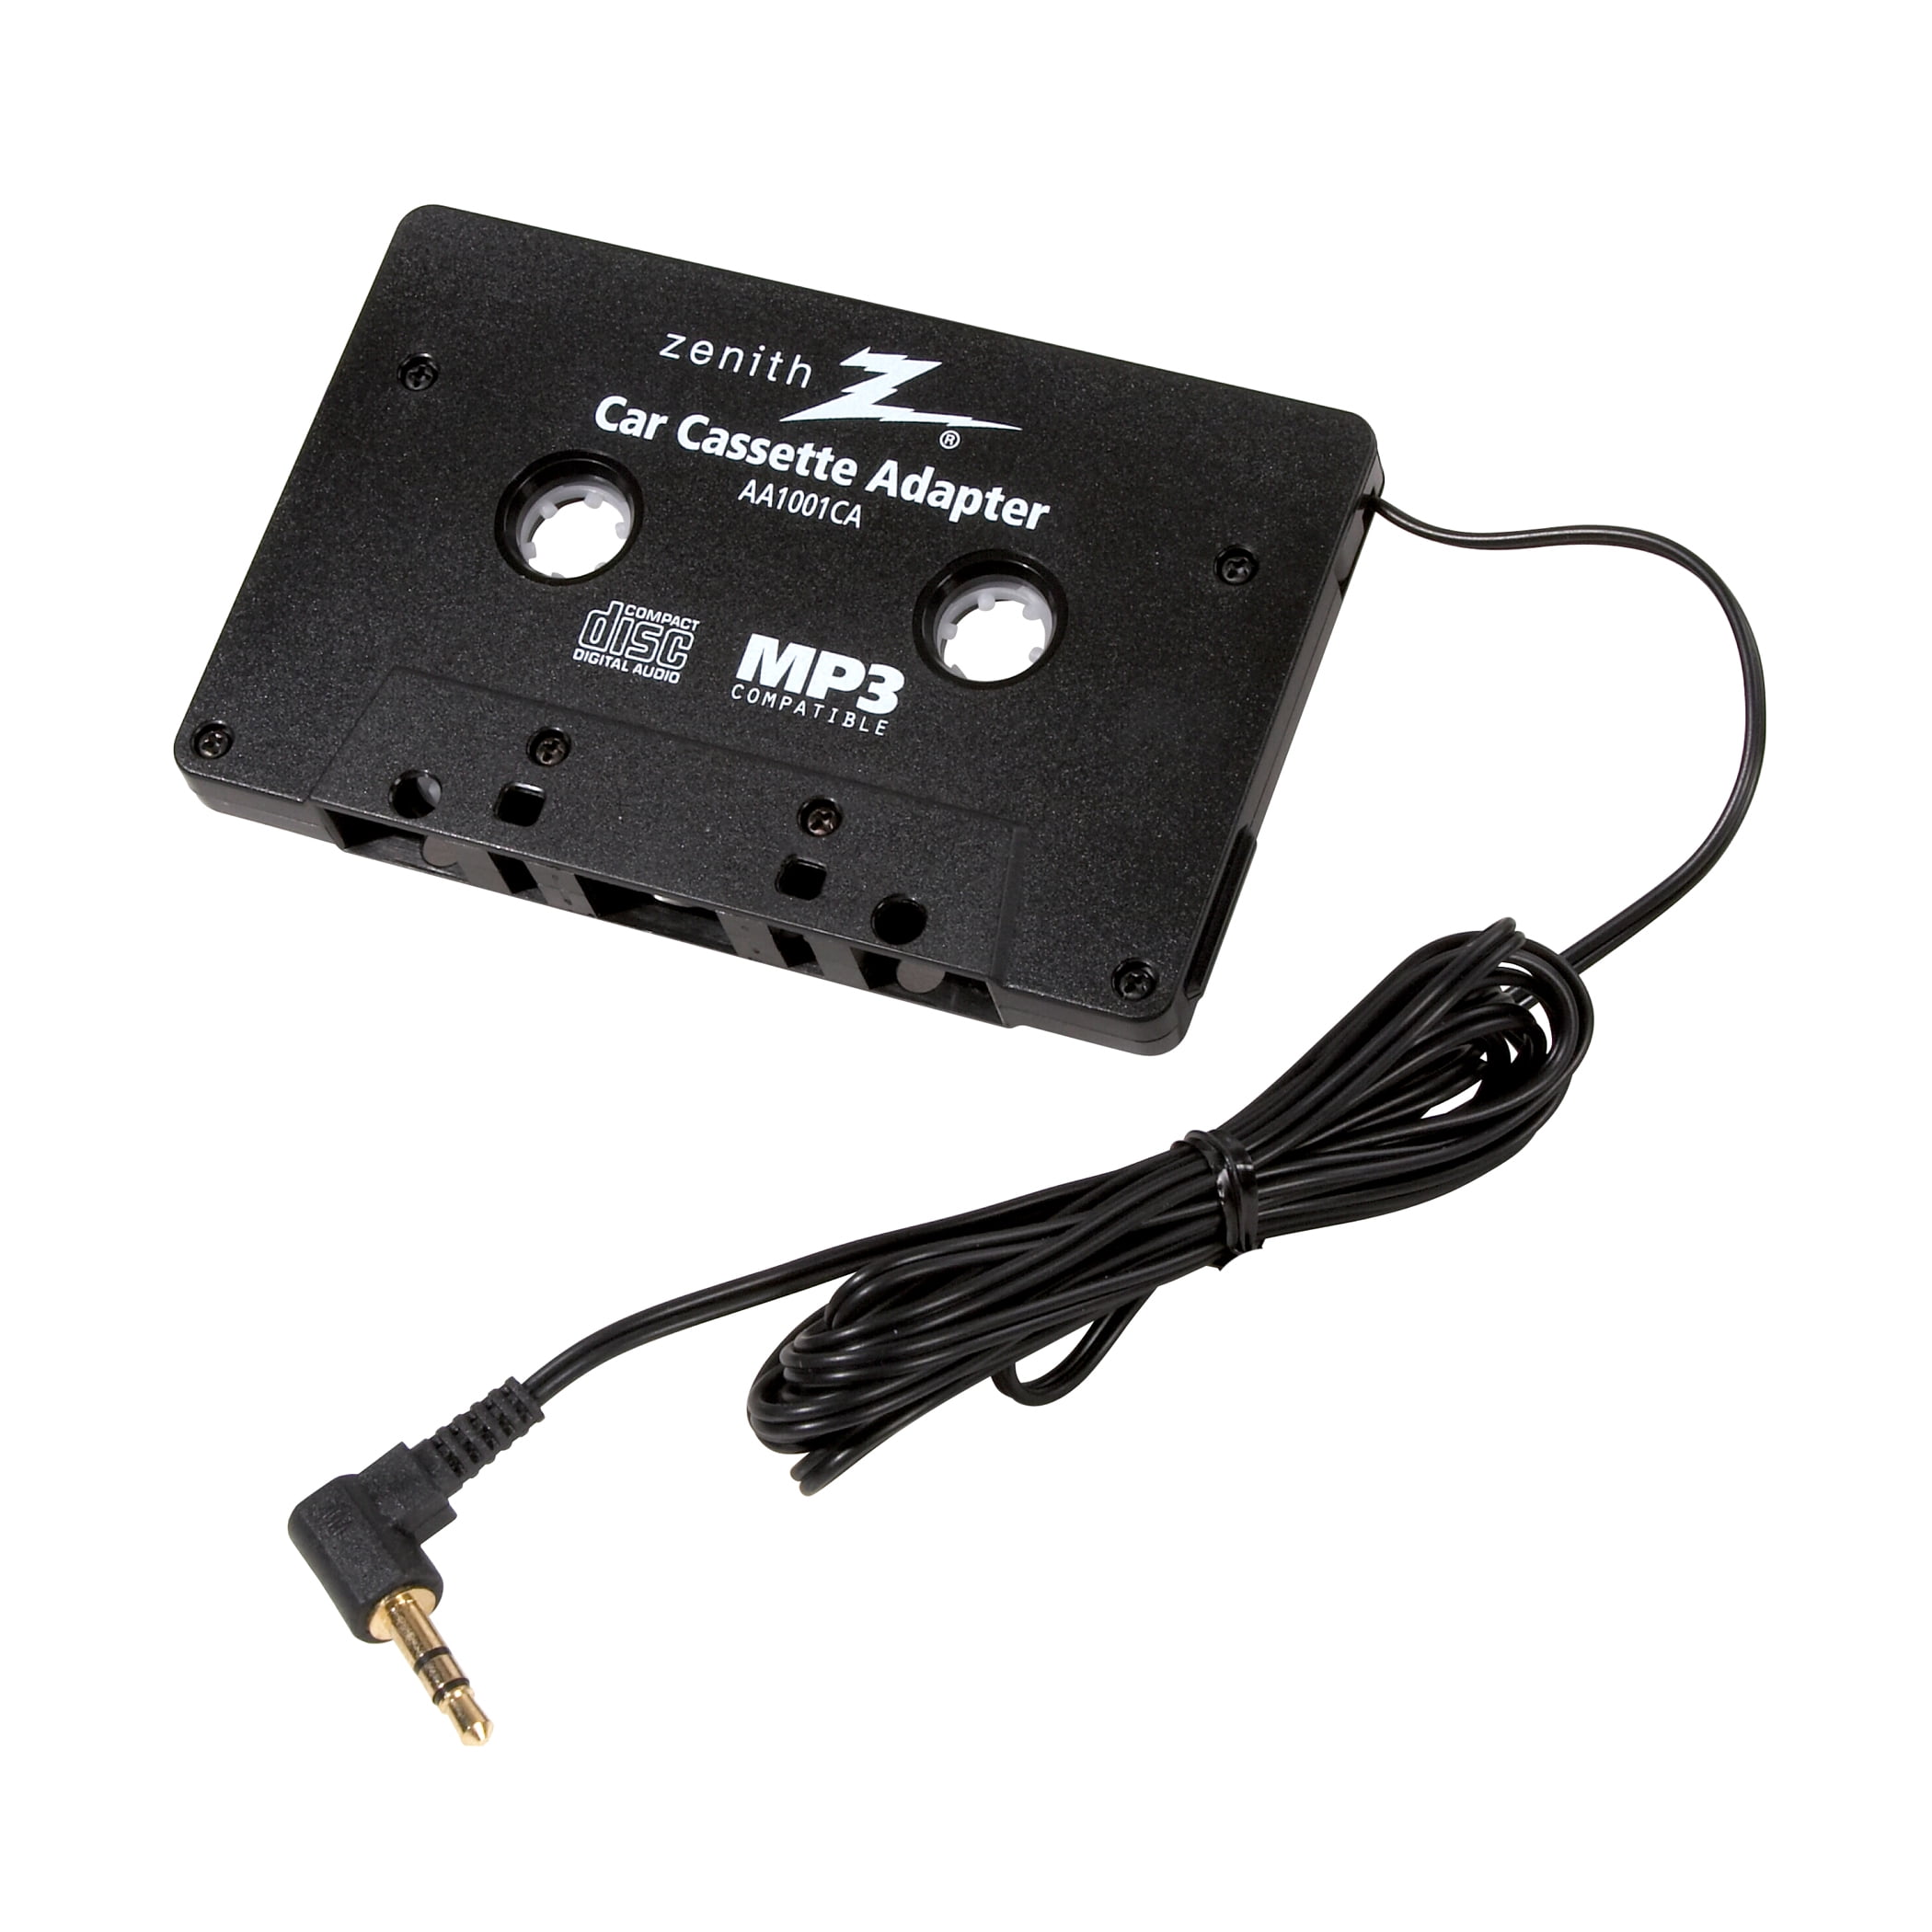 AmerTac - Zenith AA1001CA Car Cassette Adapter 